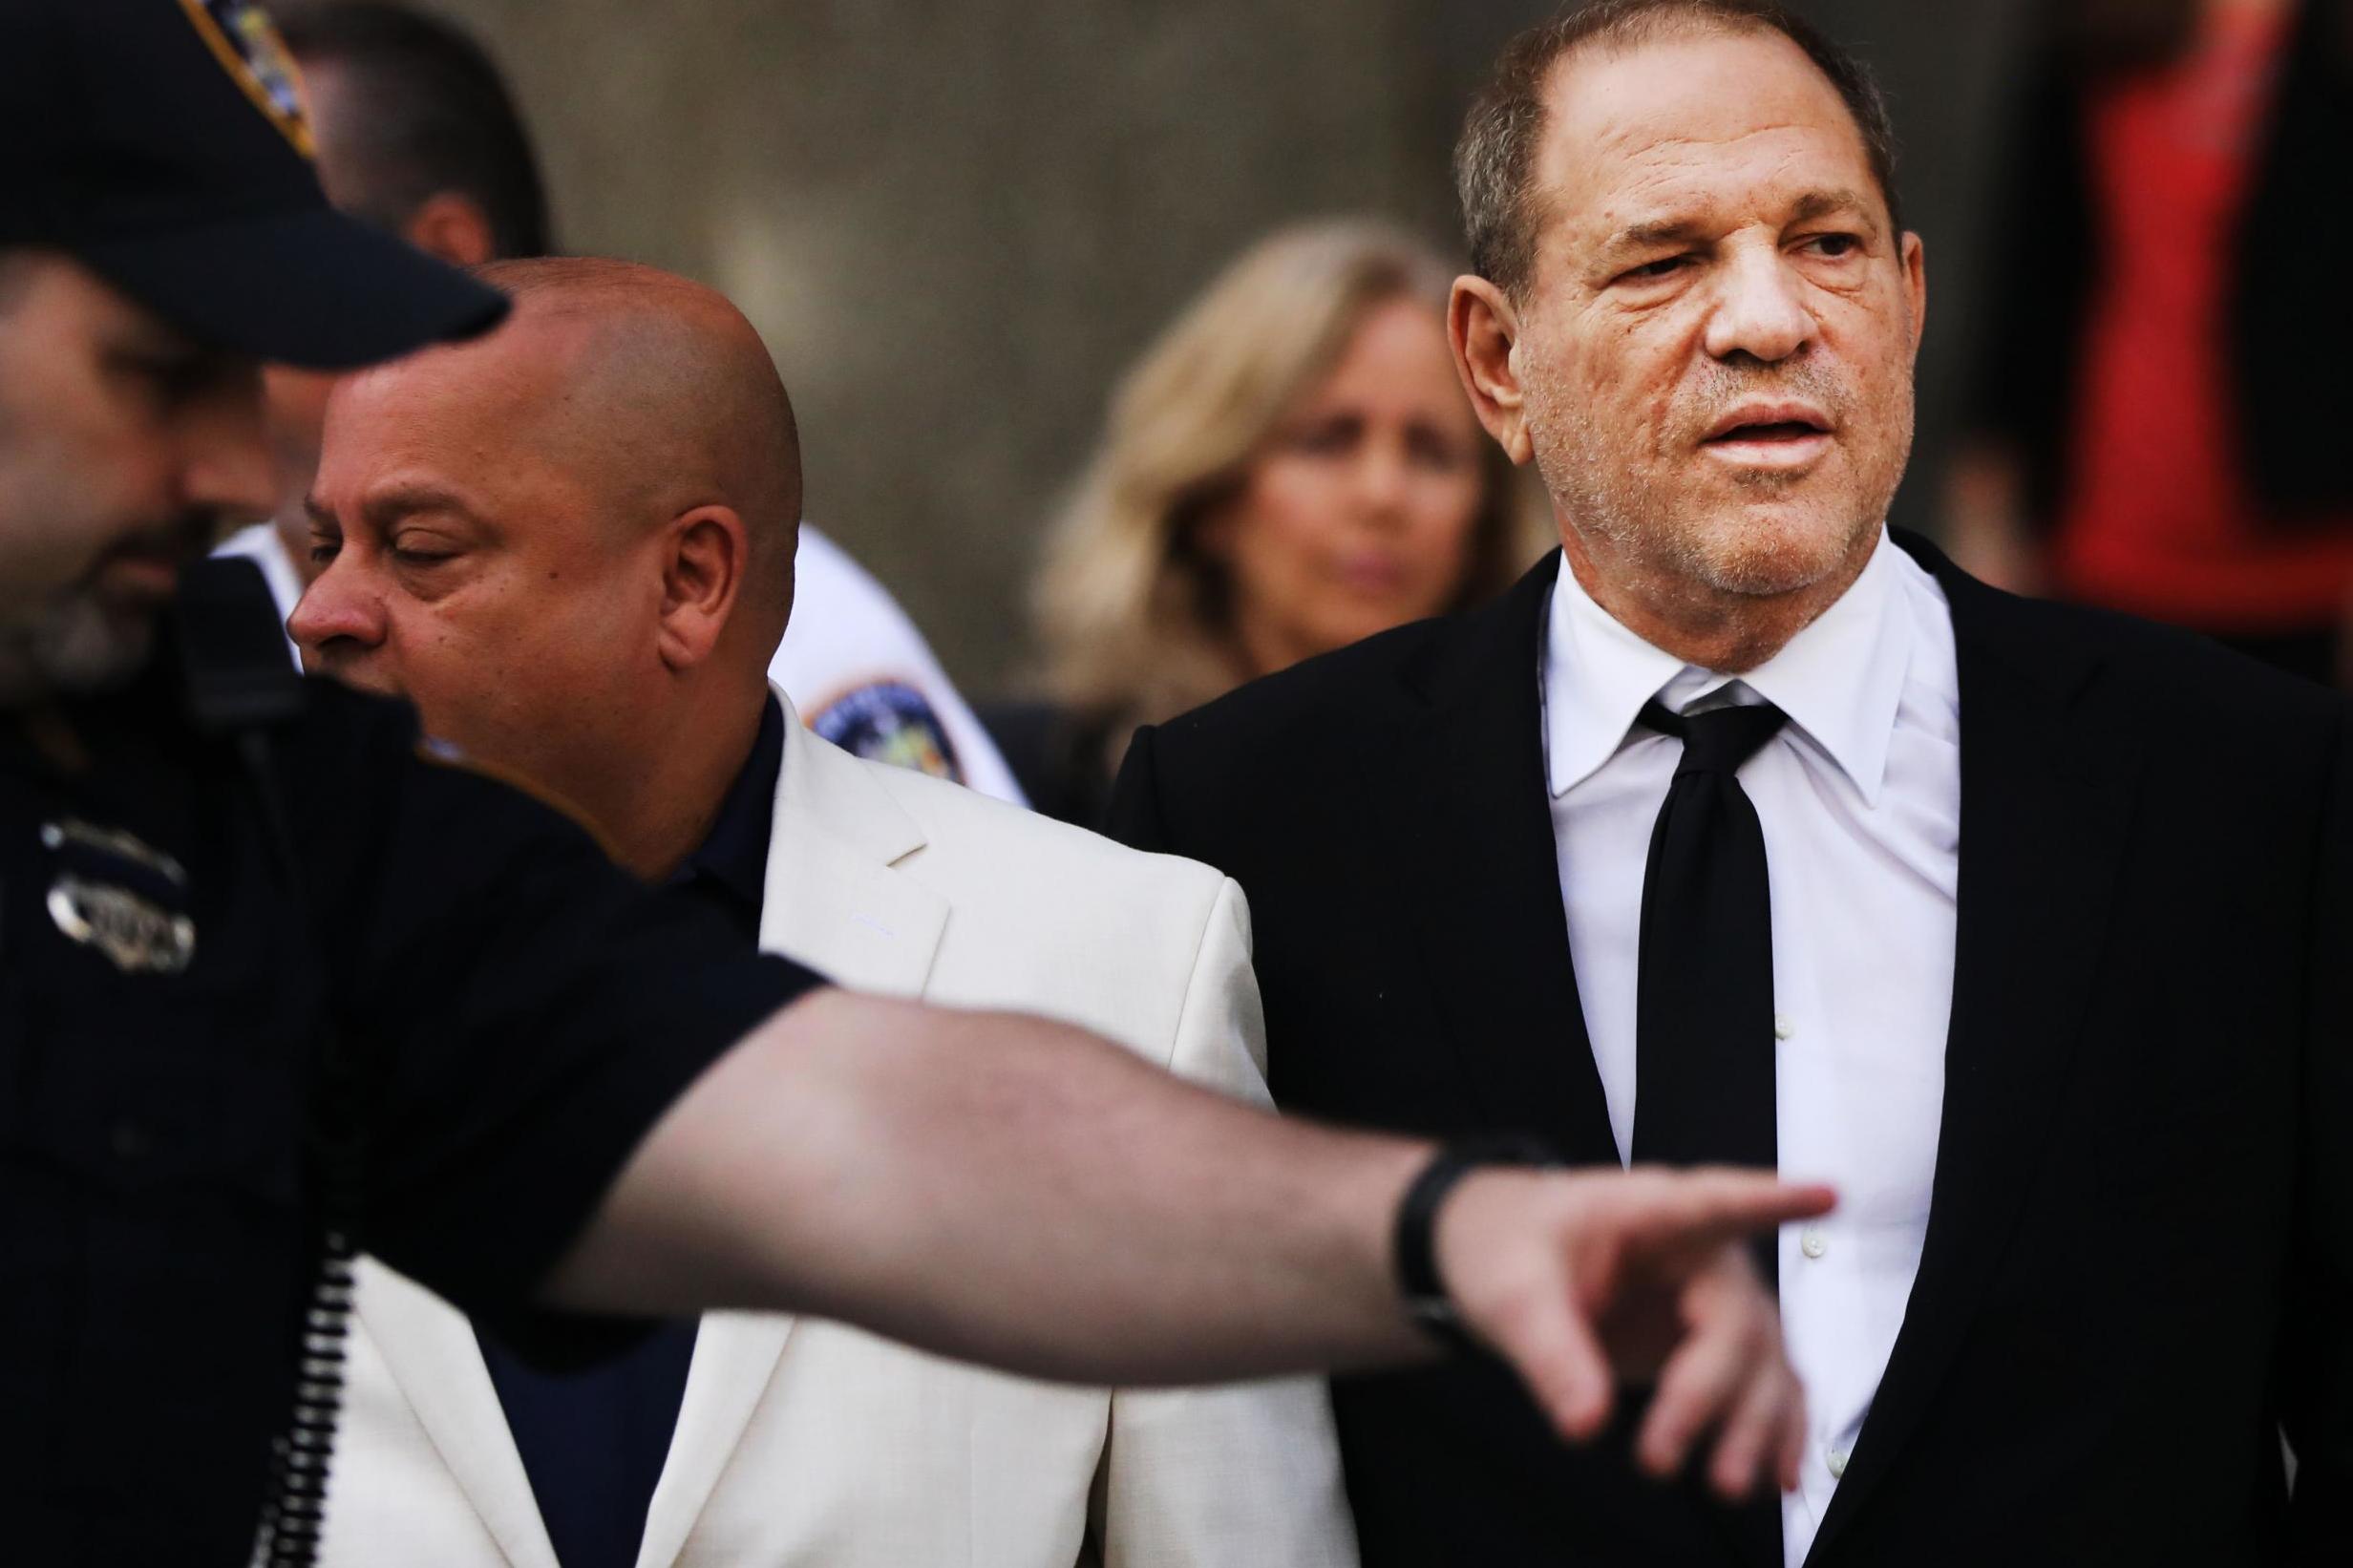 Harvey Weinstein exits court on 26 August, 2019 in New York City.